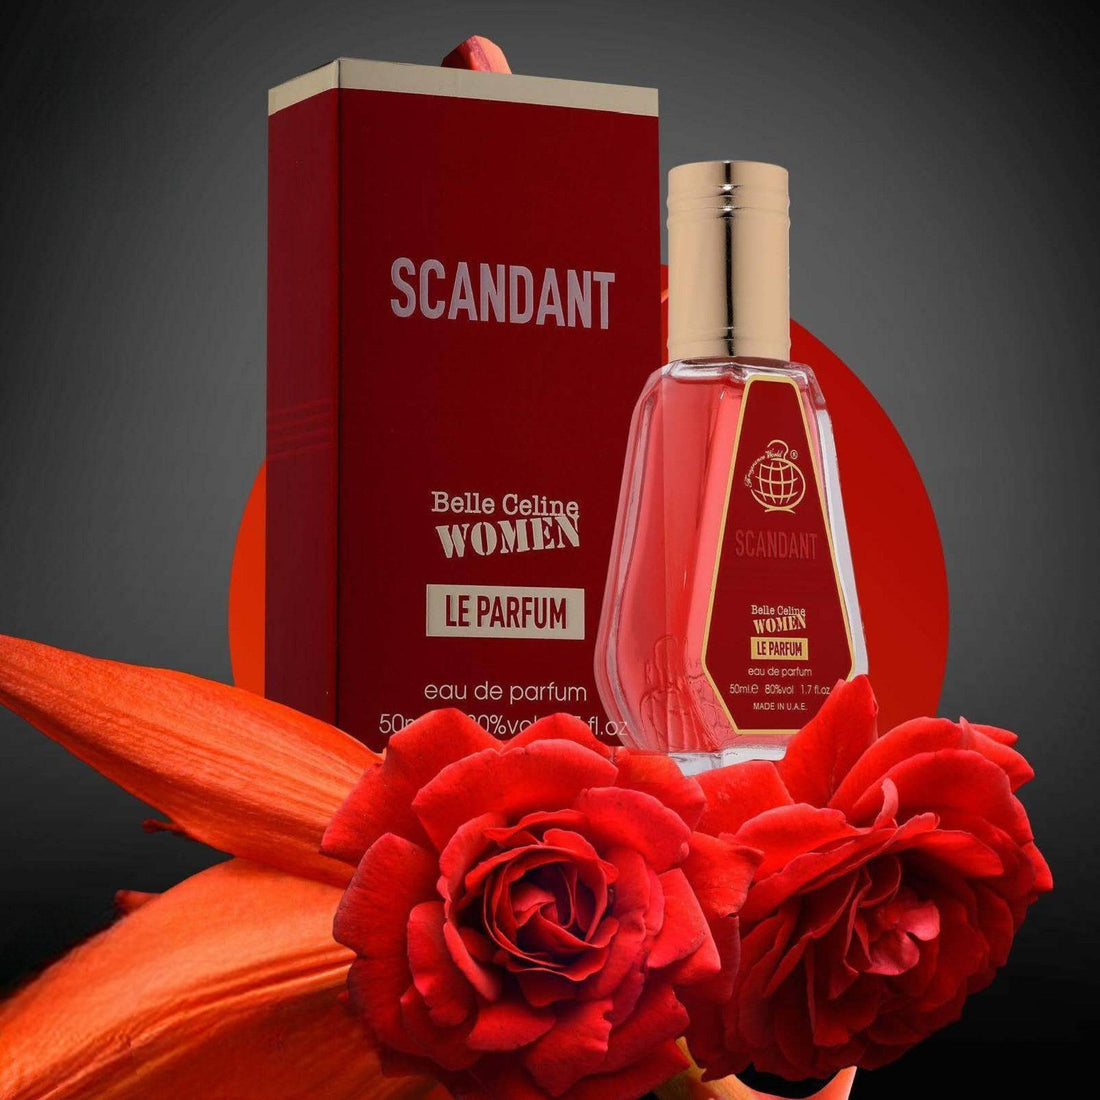 Scandant Belle Celine Women Le Parfum bottle by Fragrance World, encapsulating feminine elegance in 50ml.